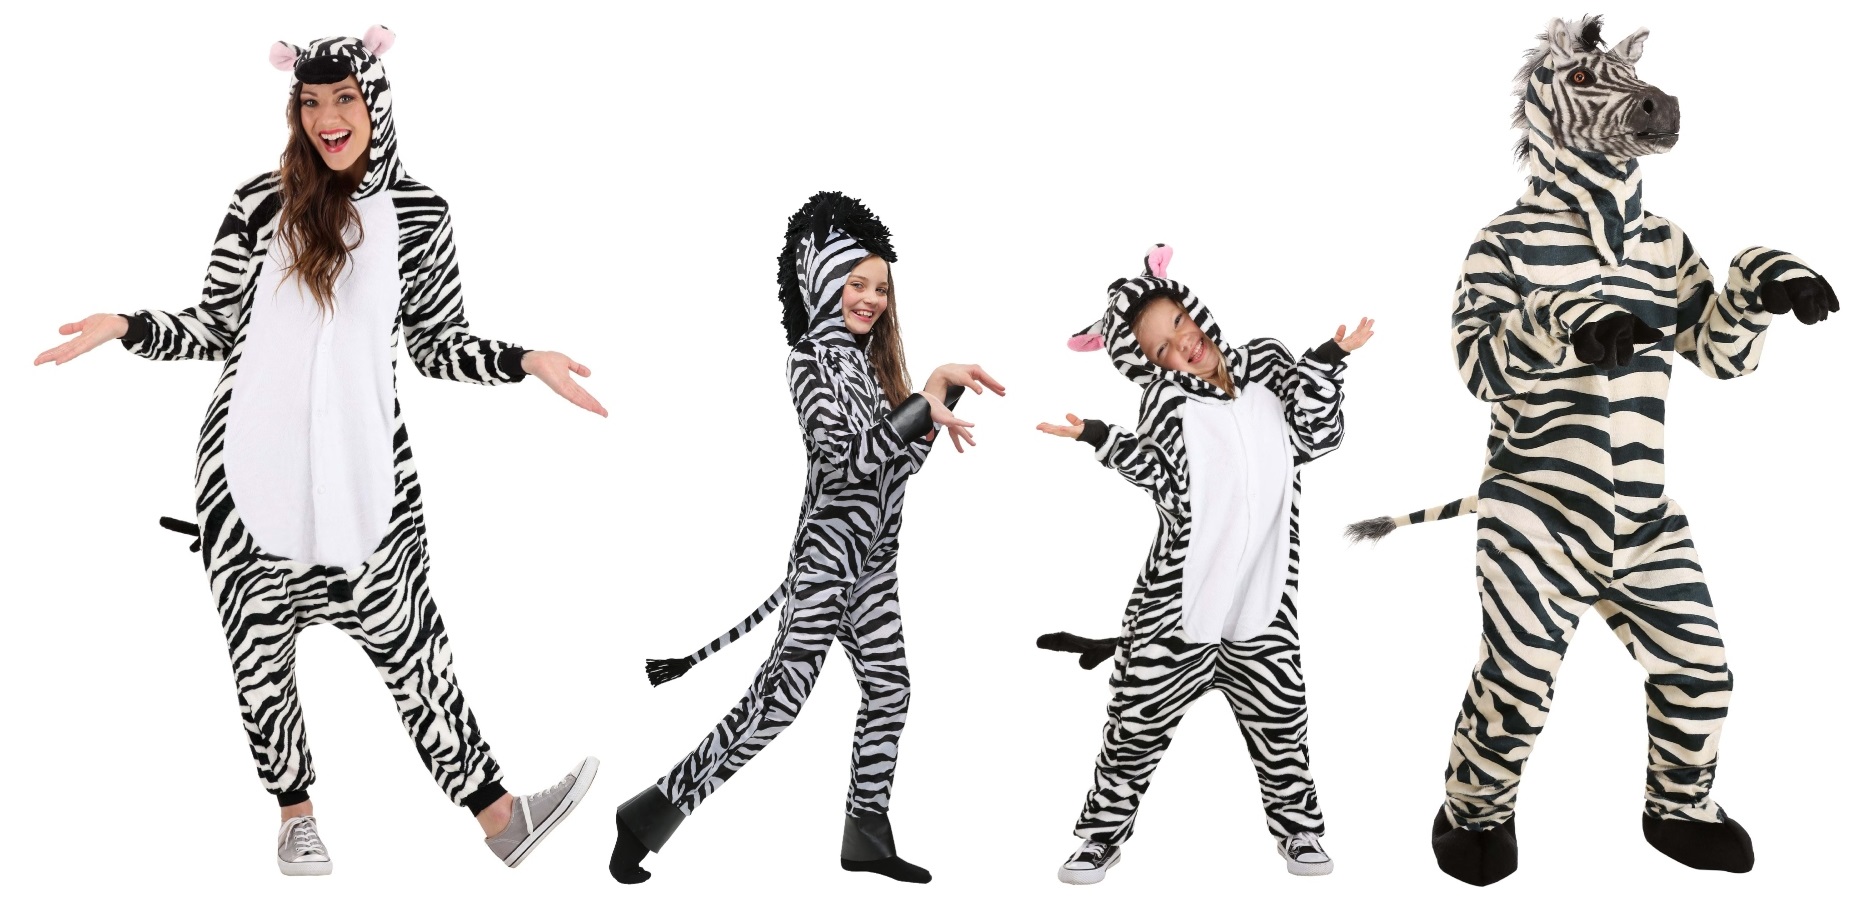 Zebra Costumes